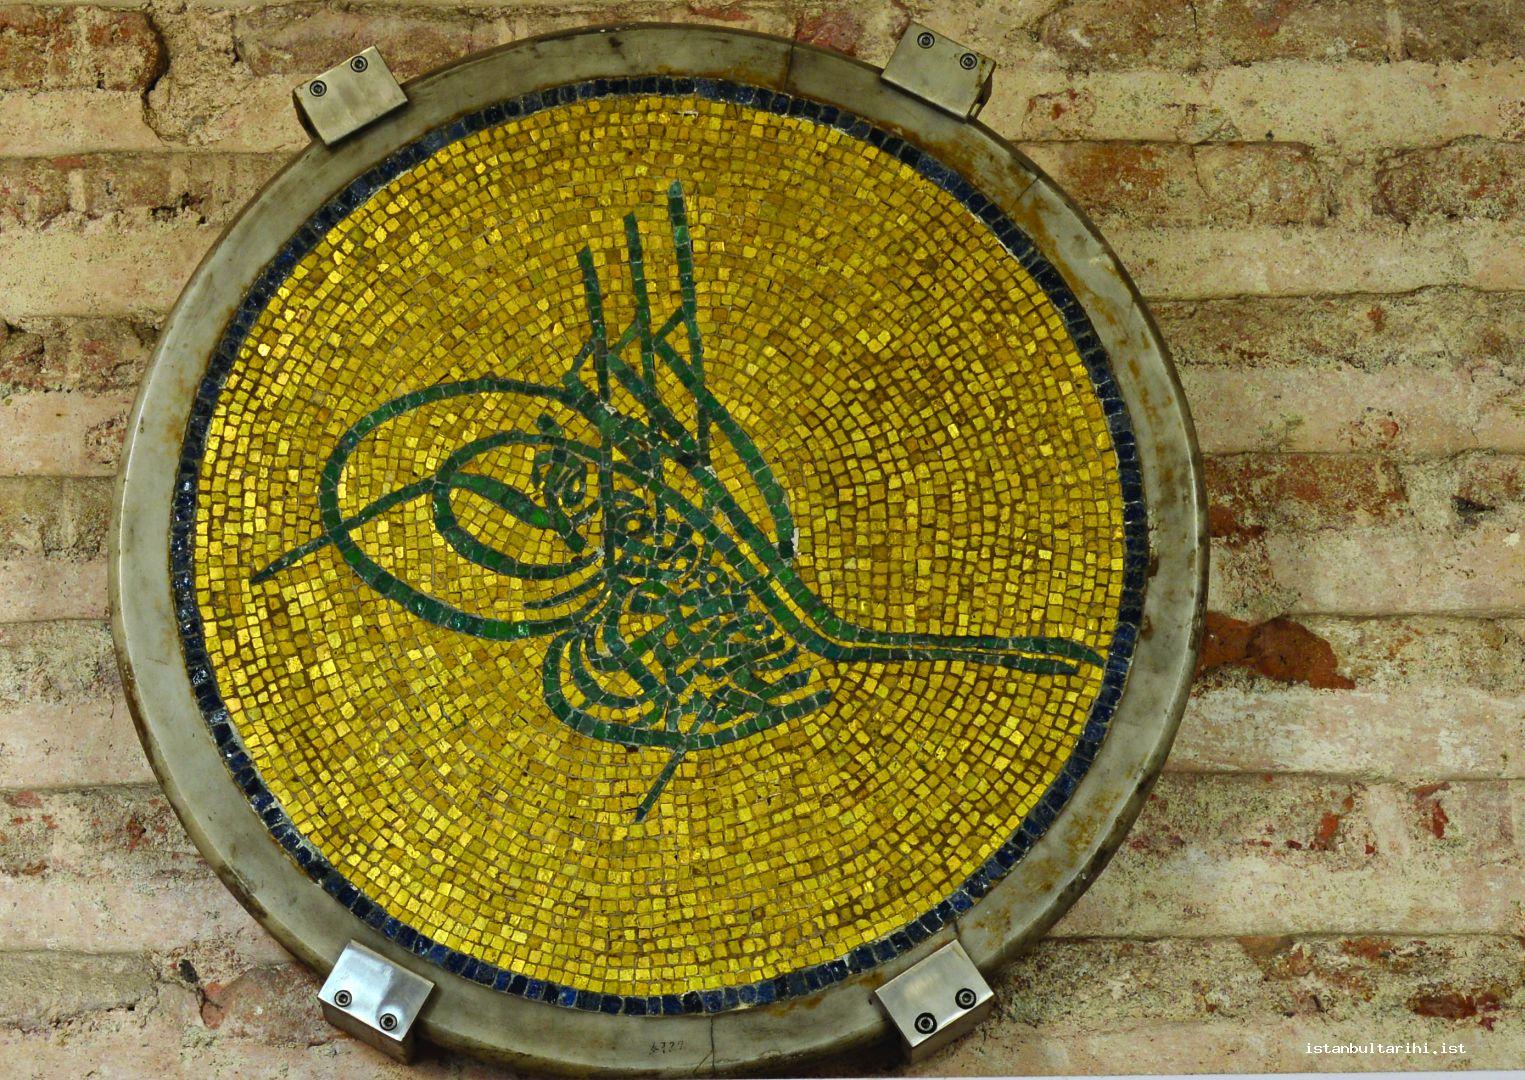 9- Dış narteks ana giriş kapısının sağındaki duv arda sergilenen Sultan Abdülmecid'in tuğrası. Tuğra Fossati kardeşlerin Ayasofya onarımı sırasında duvarlardan dökülen orjinal altın aldızlımozaik parçalarından İtalyan usta N.Lanzoni tarafından yapılmıştır